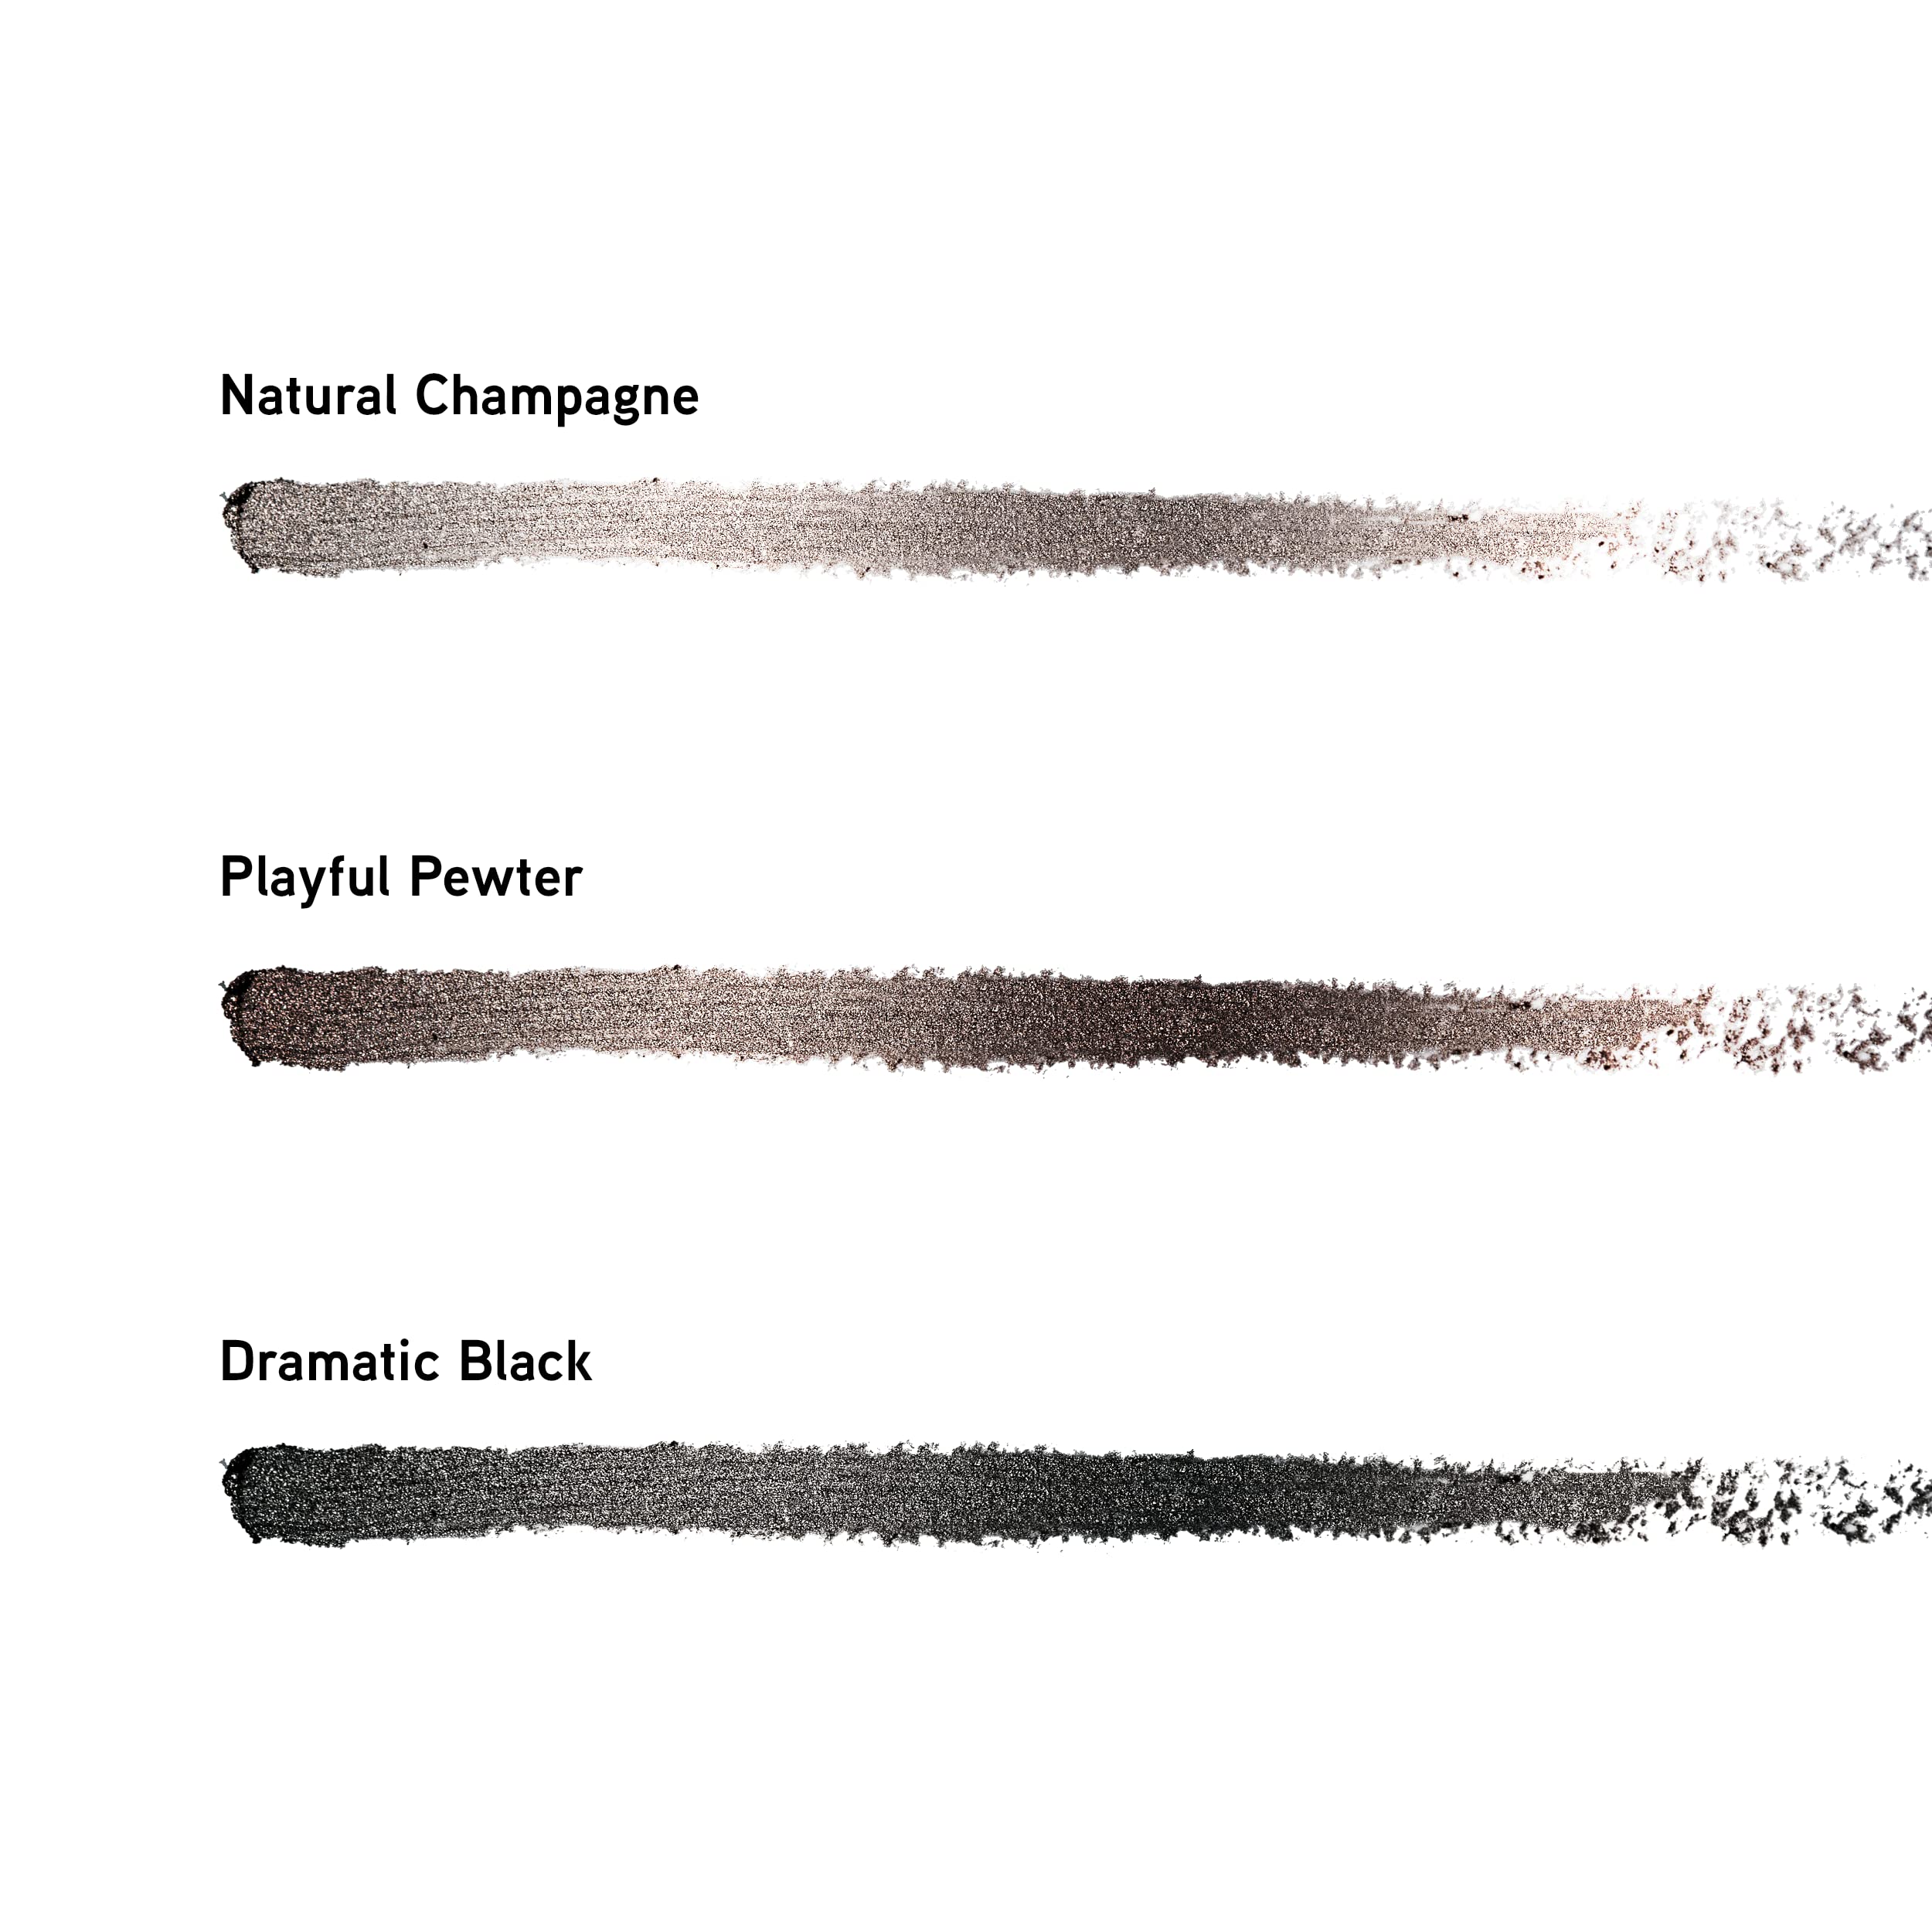 Physicians Formula Shimmer Eyeliner Pencil Set Of 3, Black, Dark Brown, Brown, Custom Eye Enhancing Eyeliner Trio, Dermatologist Approved